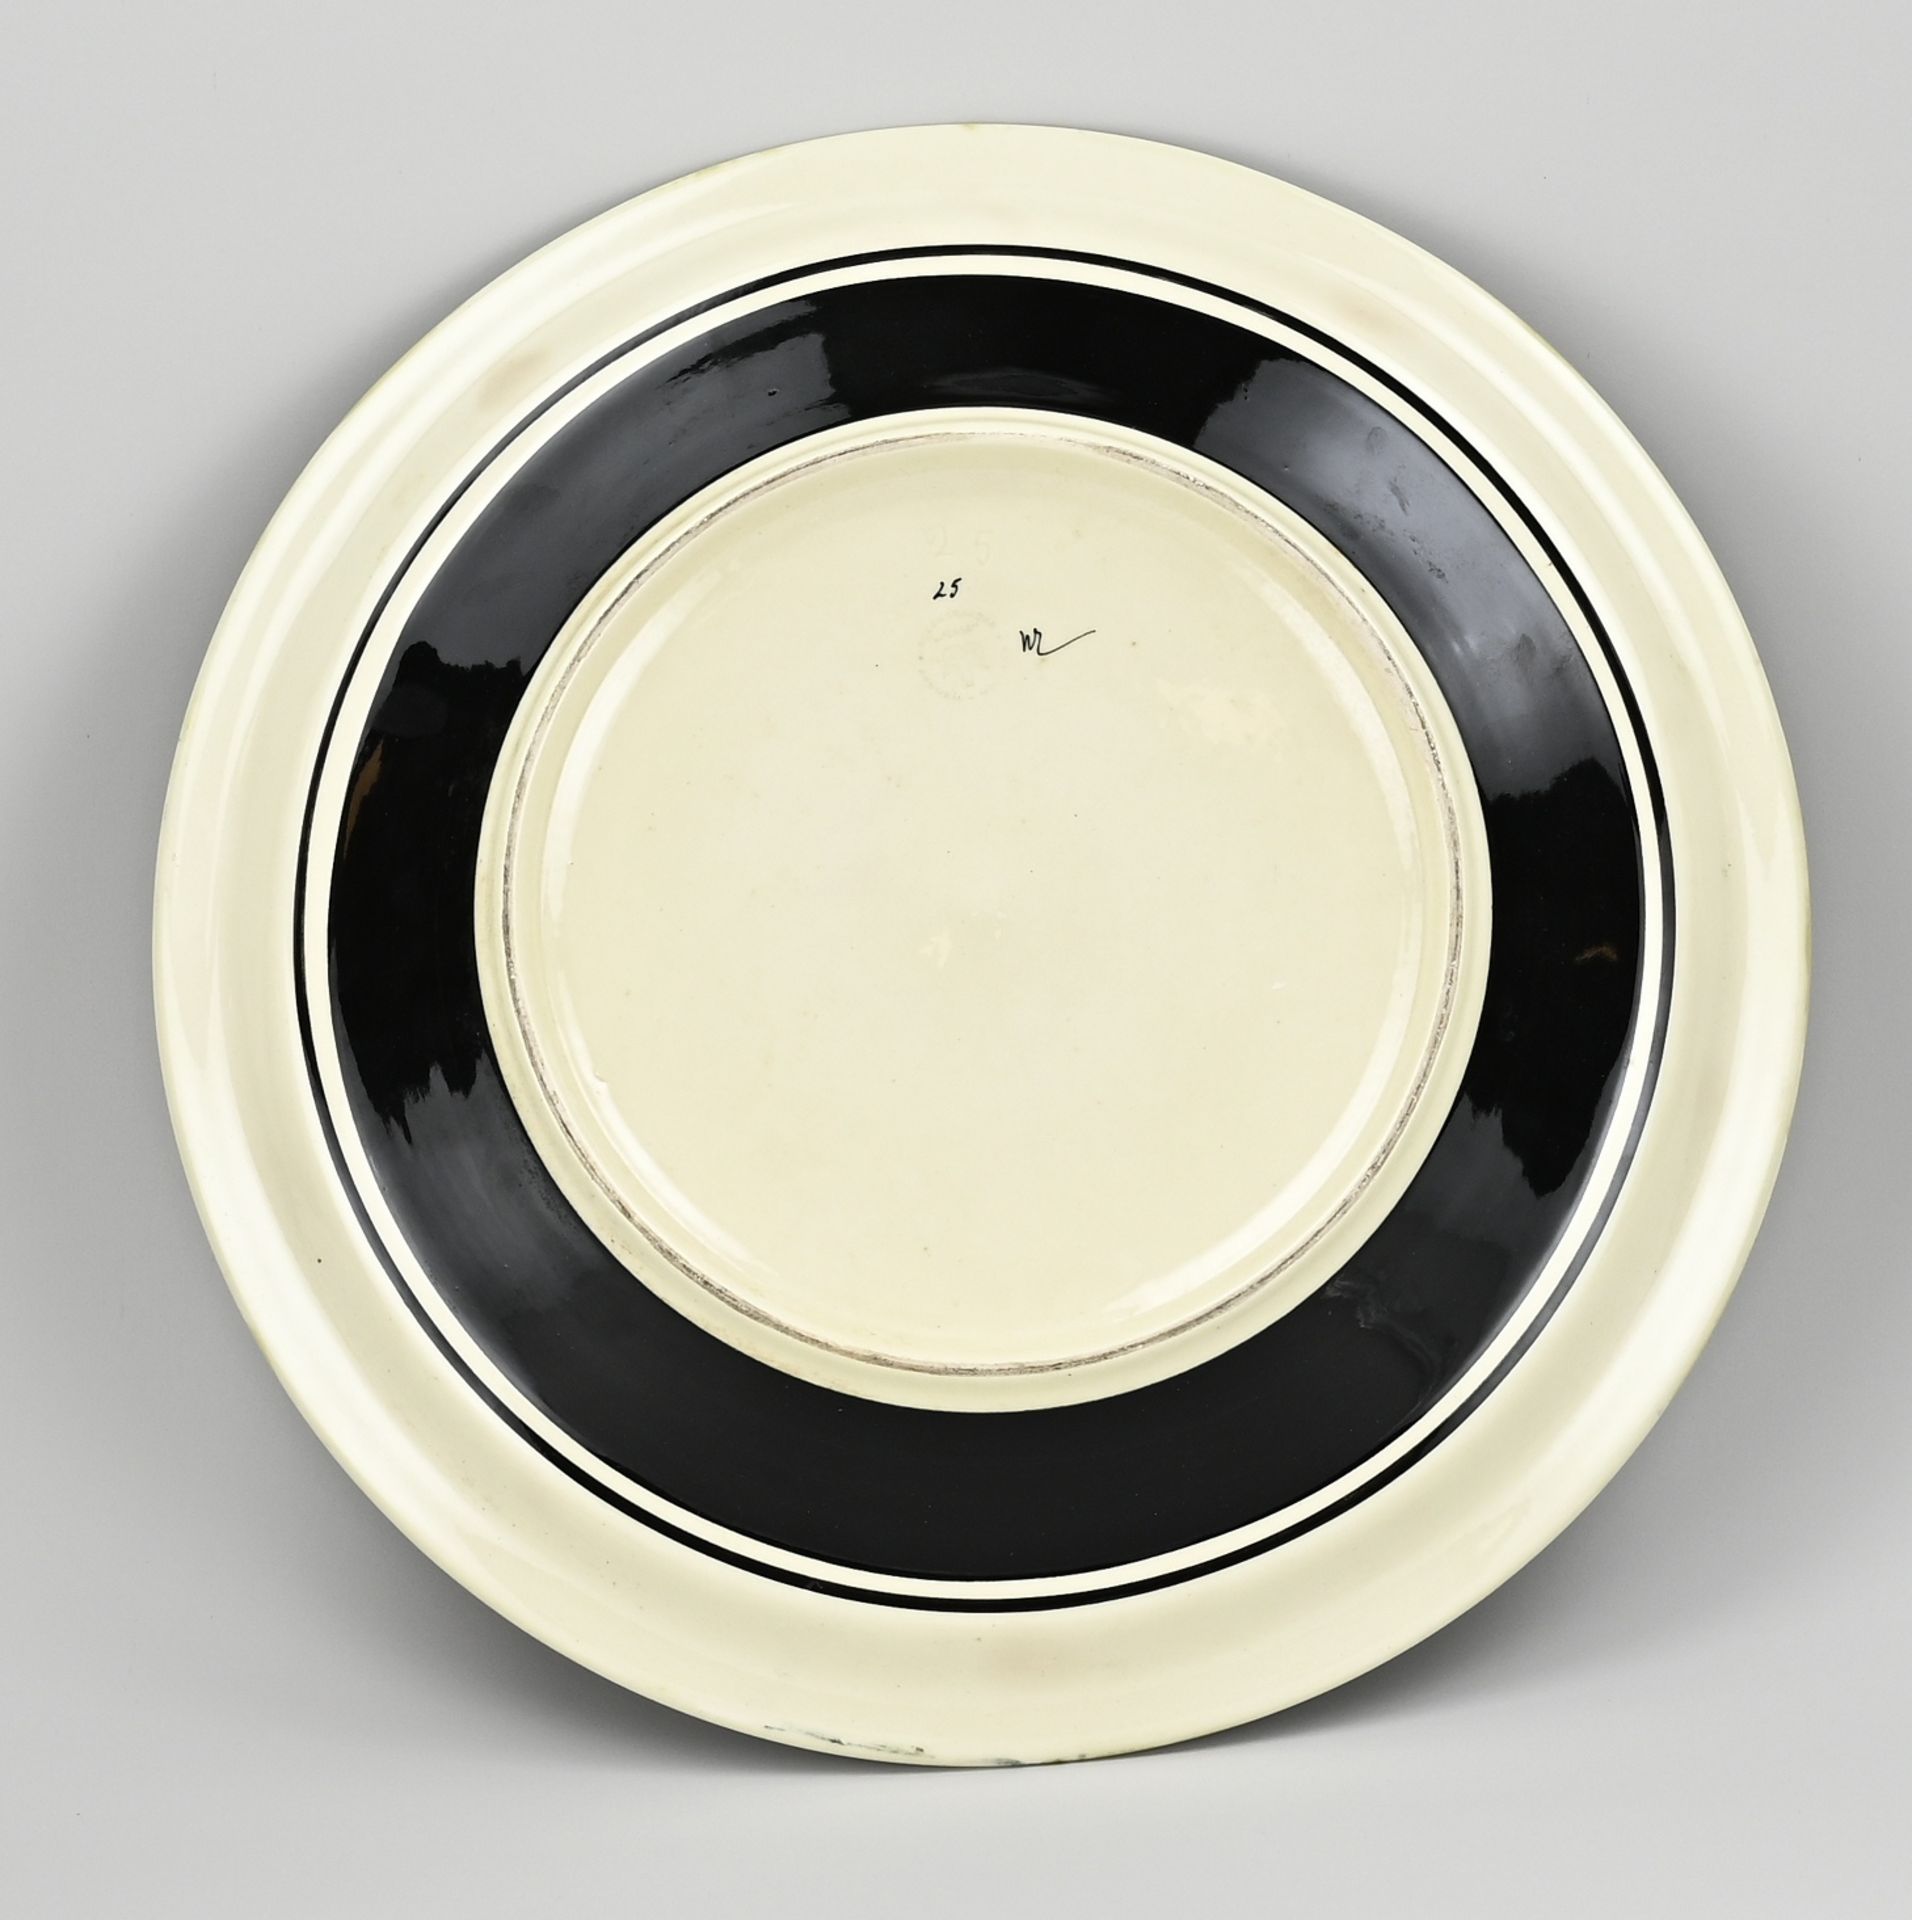 Colenbrander/Ram dish 'Museum' - Image 2 of 3